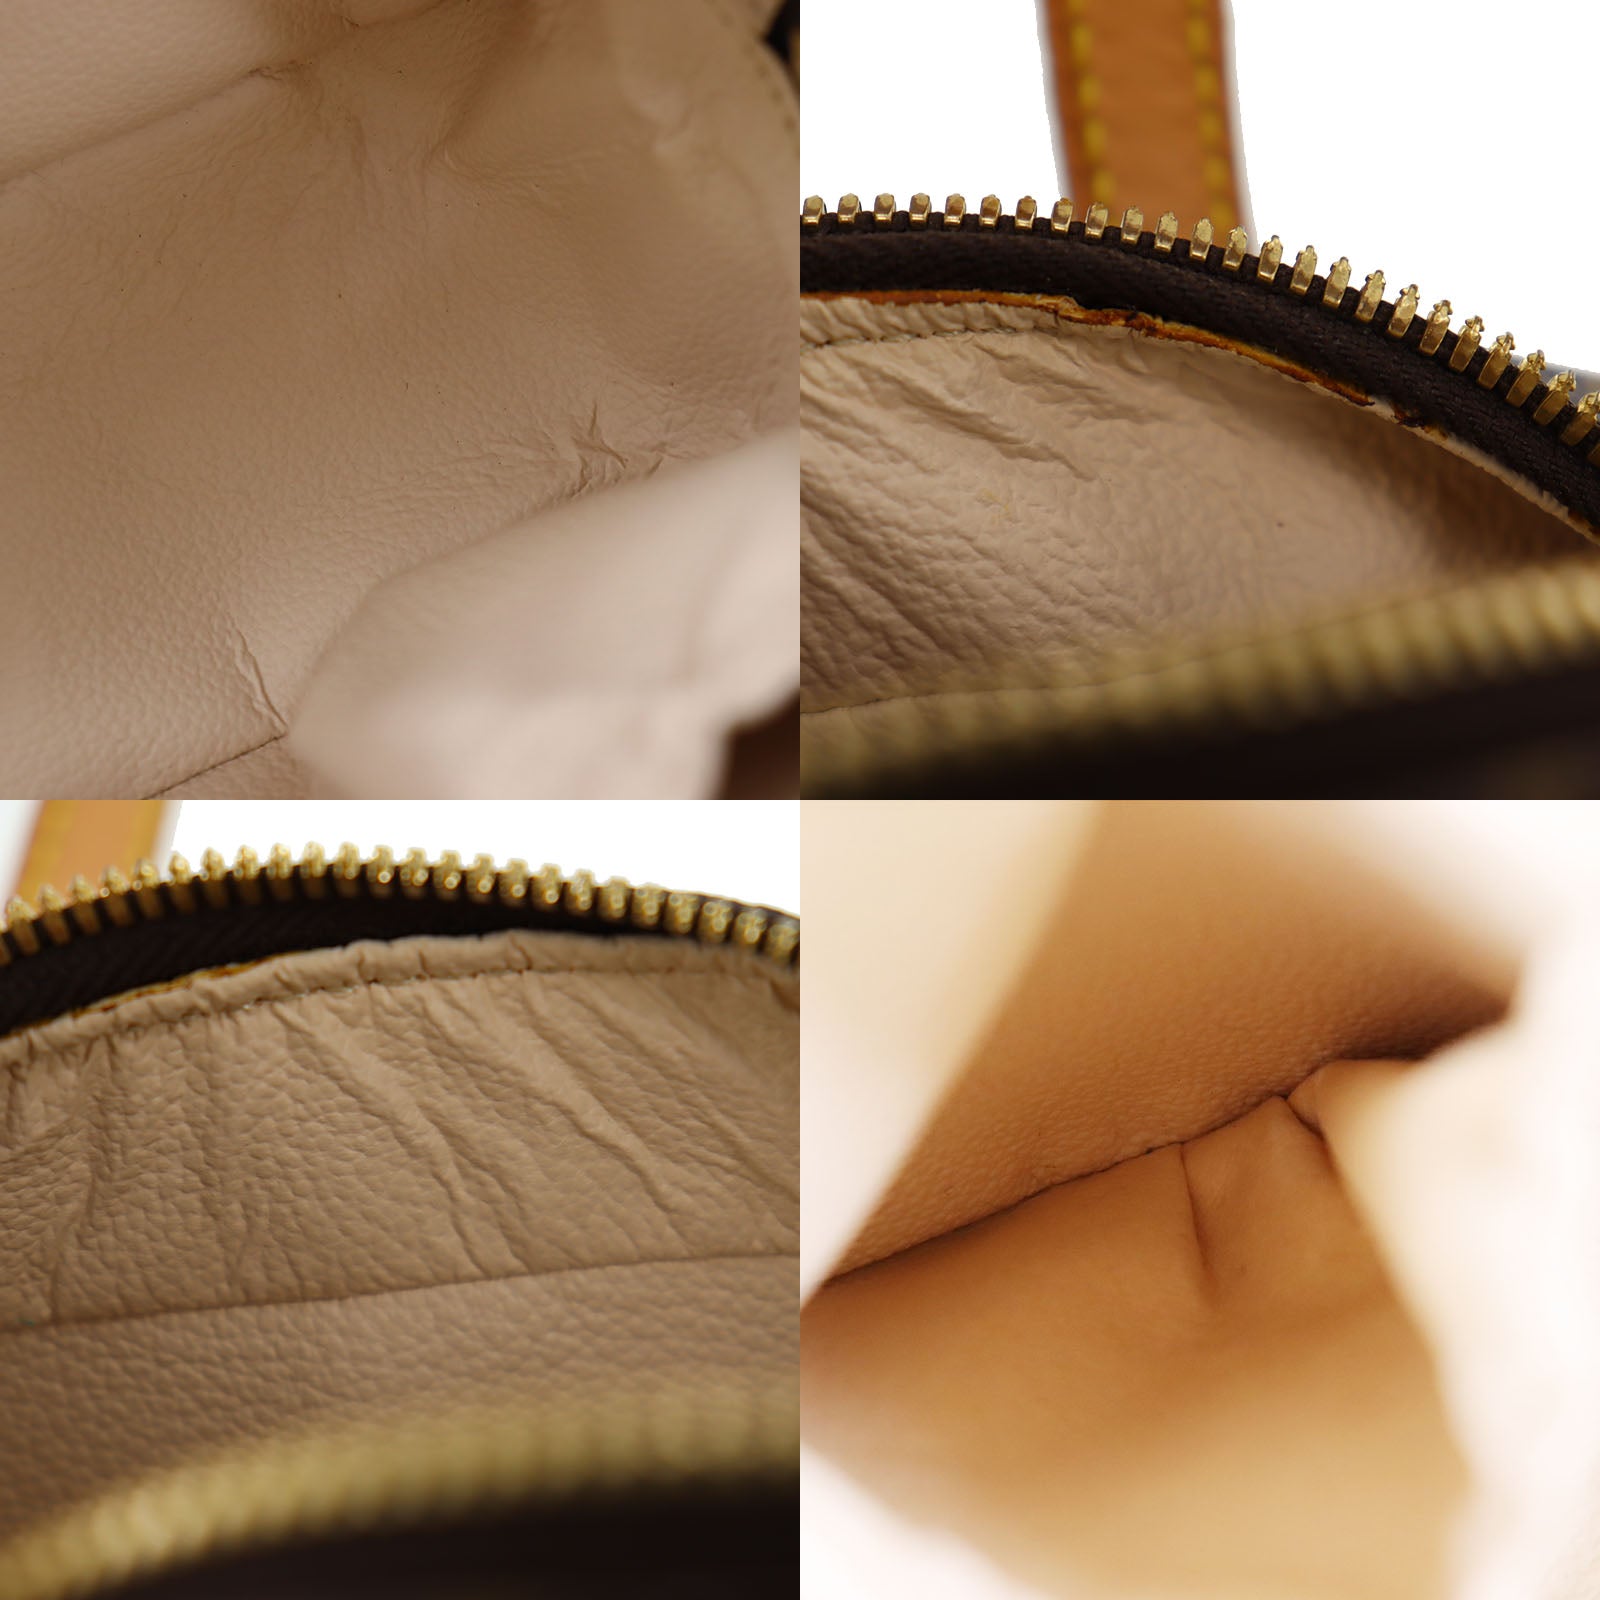 Handbag Louis Vuitton Spontini Monogram M47500 123070070